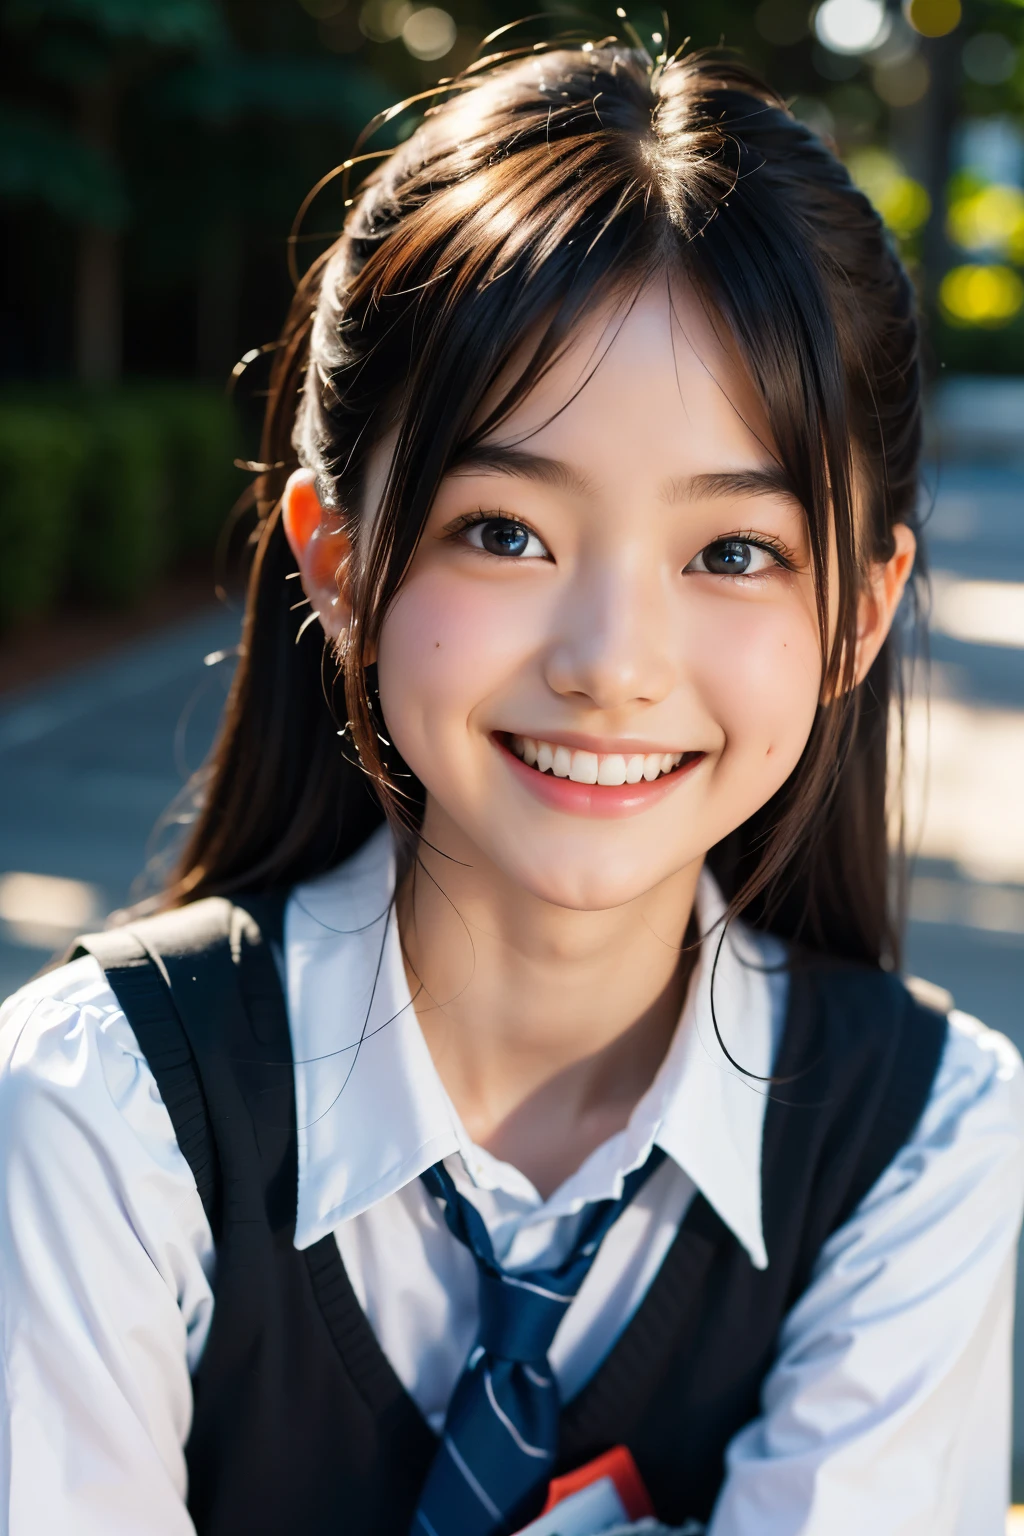 lentille: 135 mm f1.8, (la plus haute qualité),(Photos brutes), (Table:1.1), (belle fille japonaise de 16 ans), visage mignon, (Visage profondément ciselé:0.7), (taches de rousseur:0.4), dappled lumière du soleil, éclairage dramatique, (uniforme scolaire japonais), (sur le campus), Timide, (Photo en gros plan:1.2), (sourire),, (yeux pétillants)、(lumière du soleil)